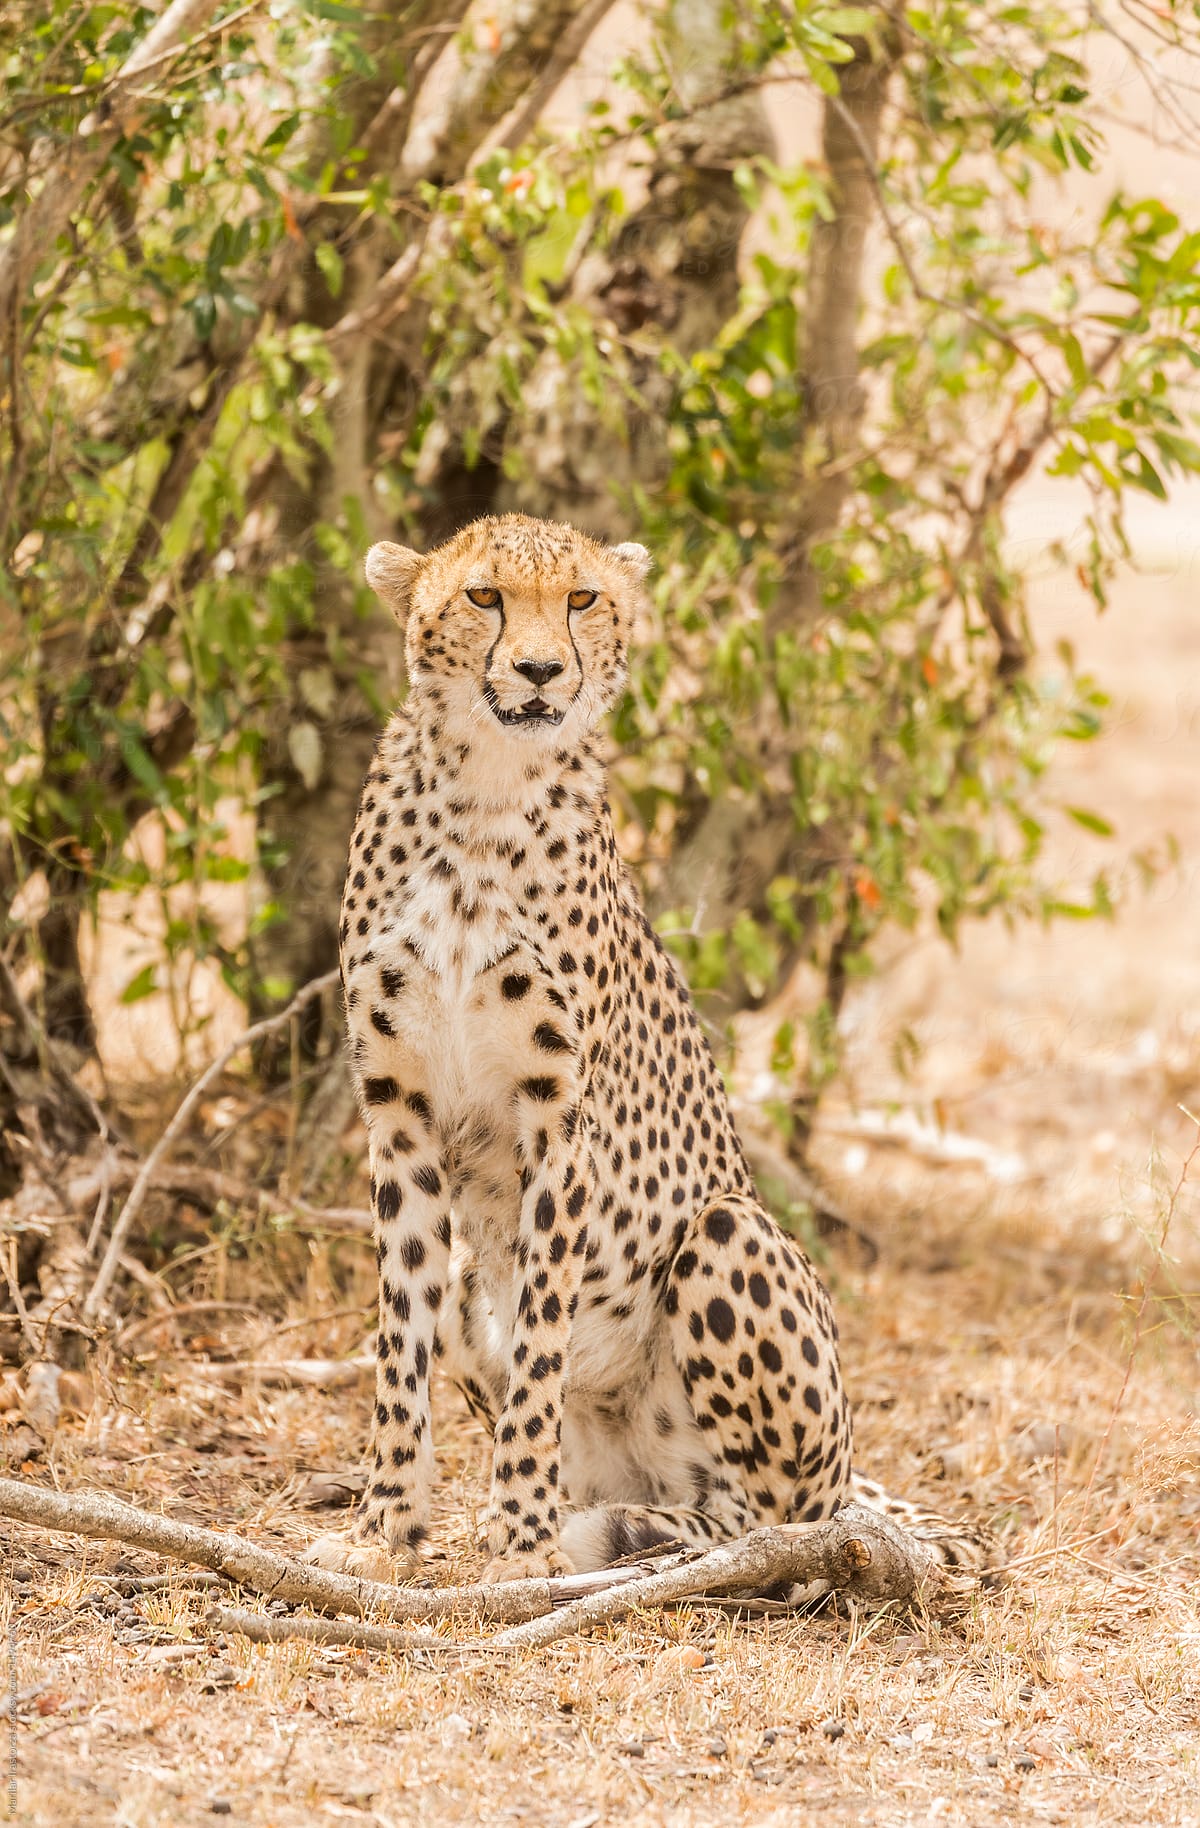 Cheetah sitting looking at the camera